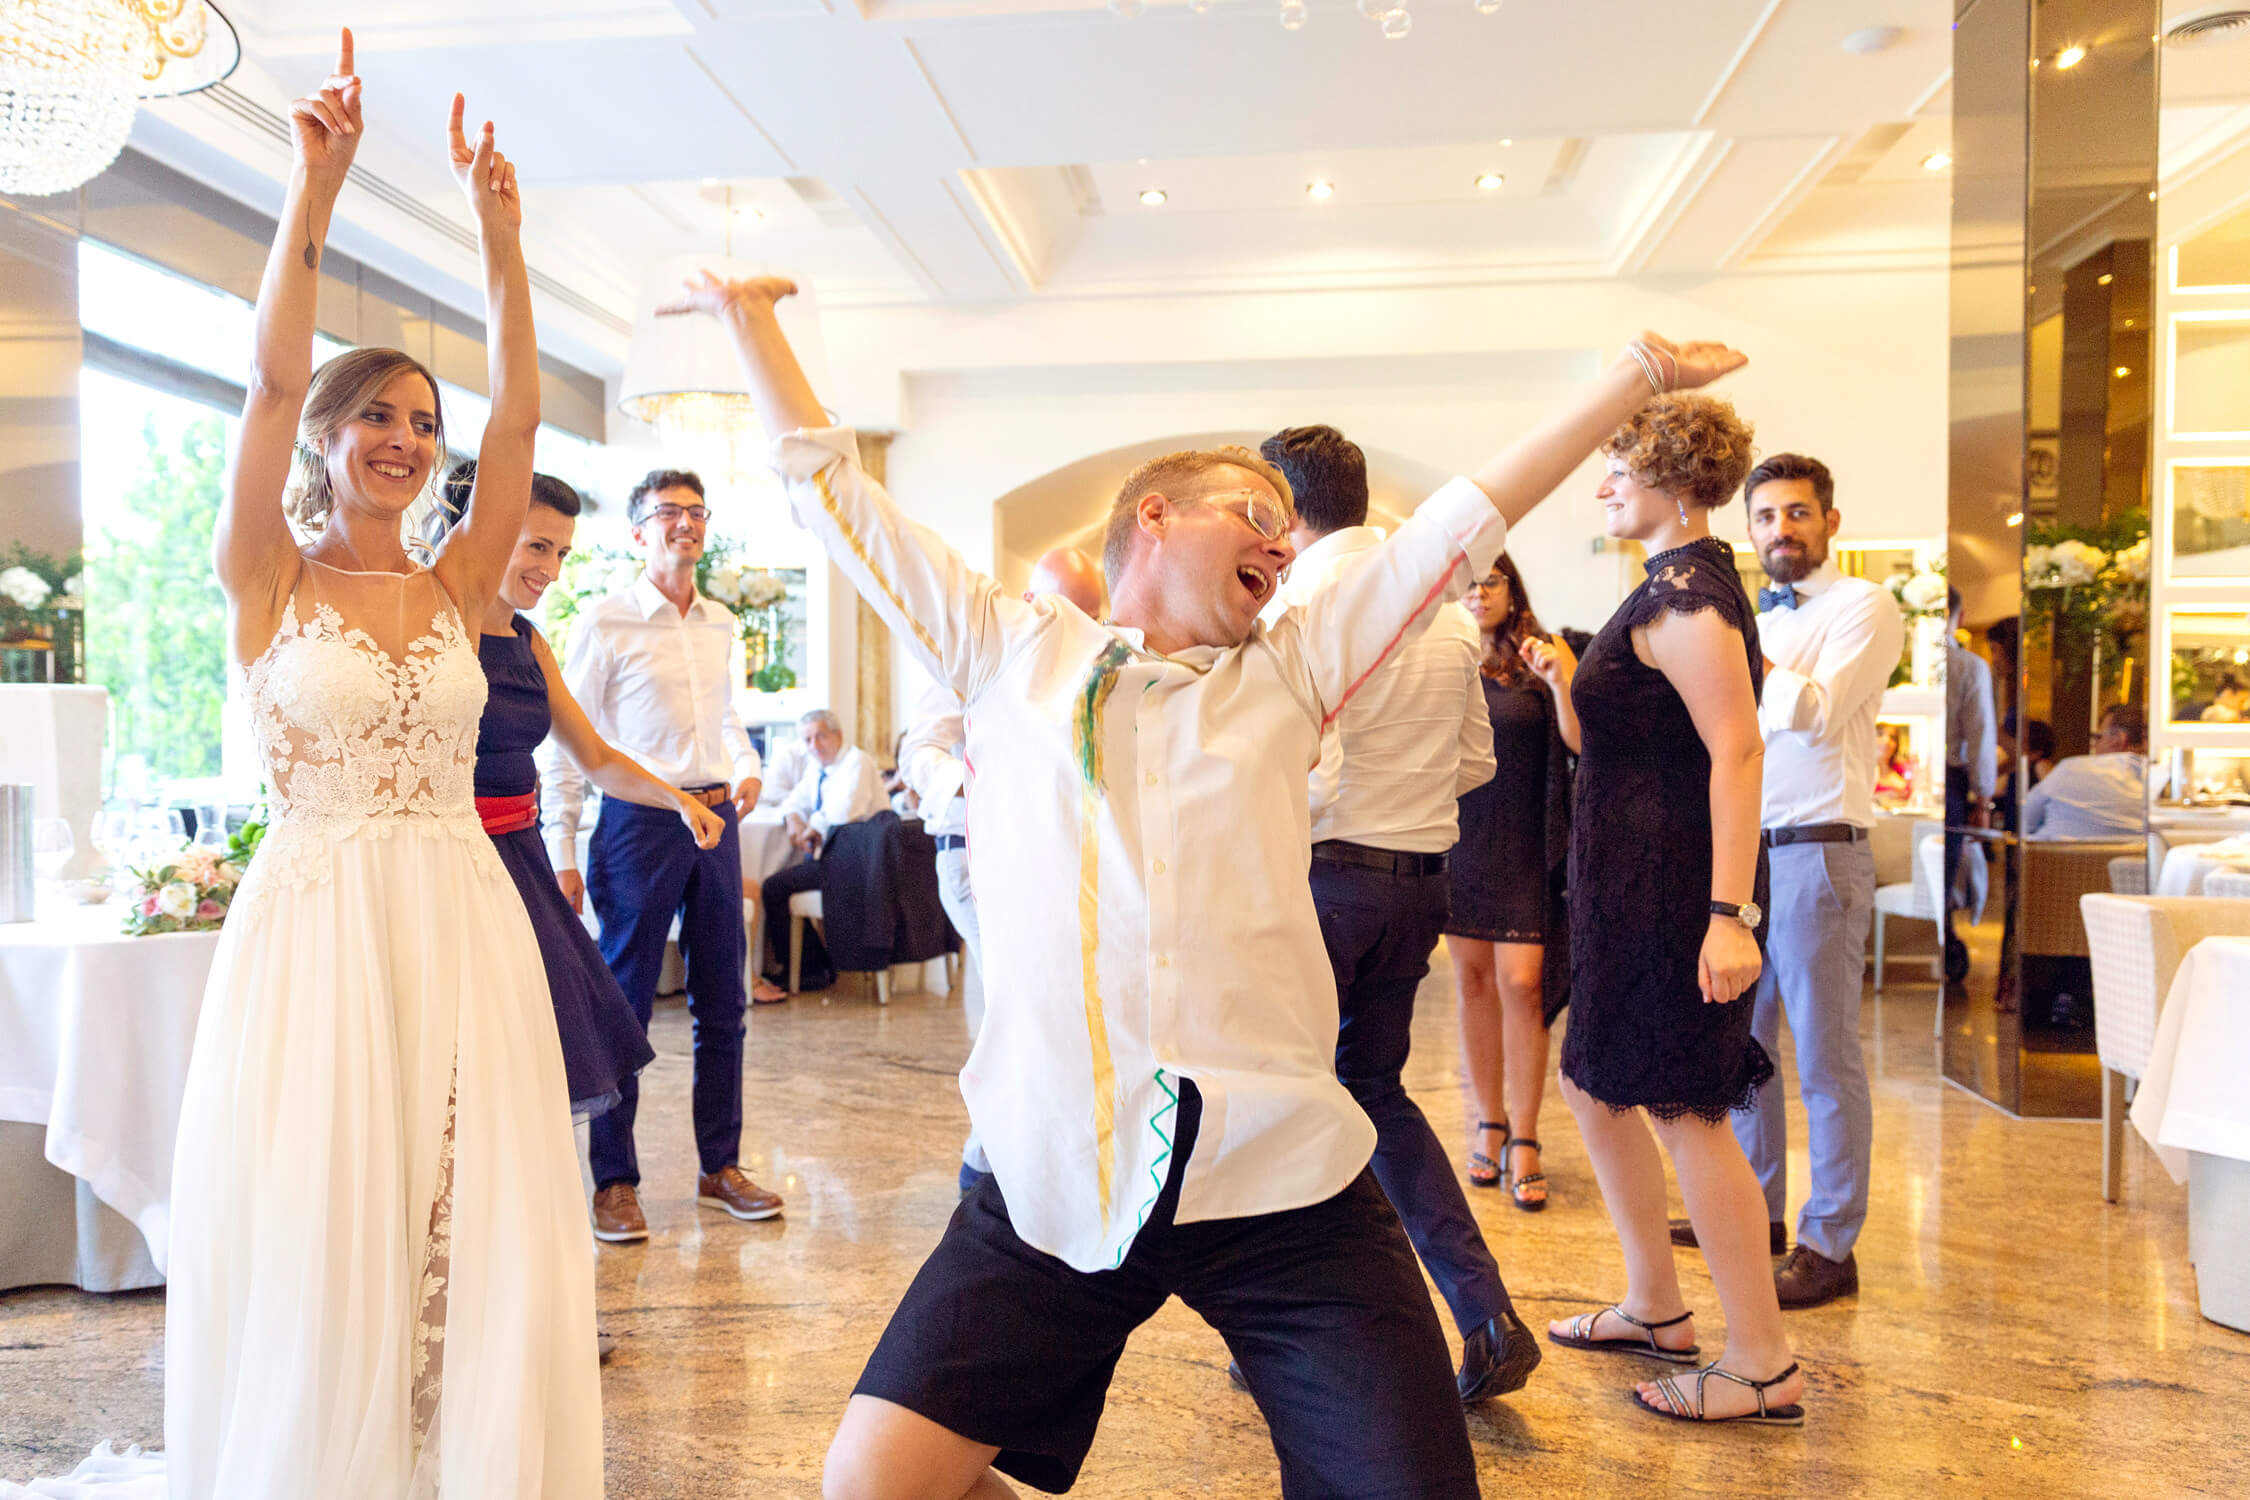 Dancing party at a wedding in Cinque Terre, Italy